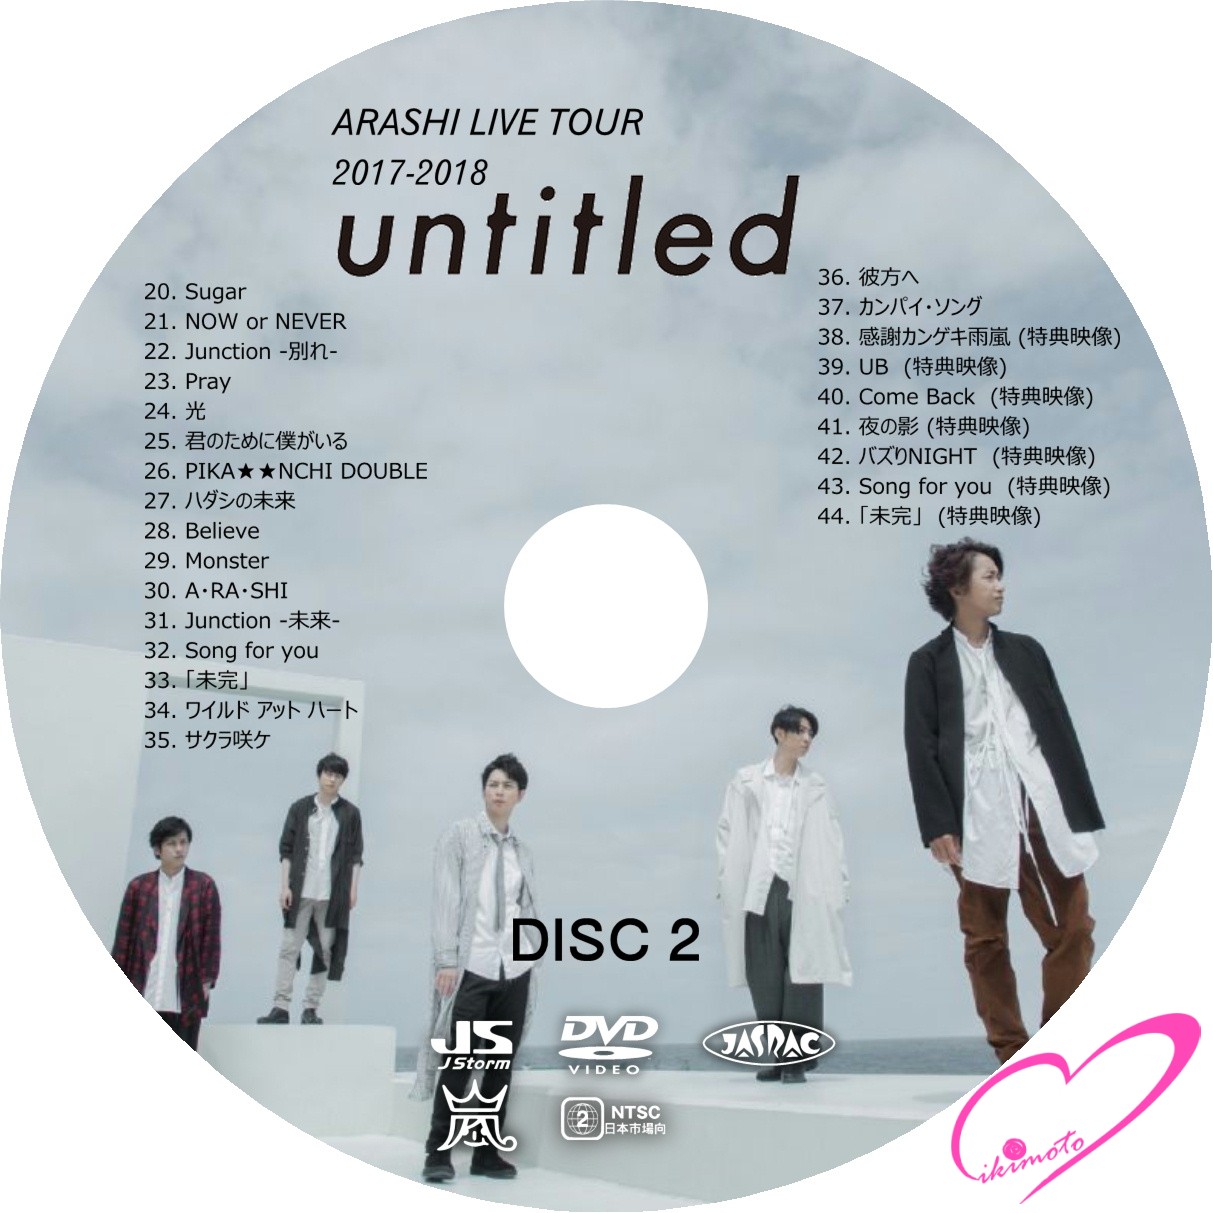 嵐 ARASHI LIVE TOUR 2017-2018「untitled」 - ブルーレイ